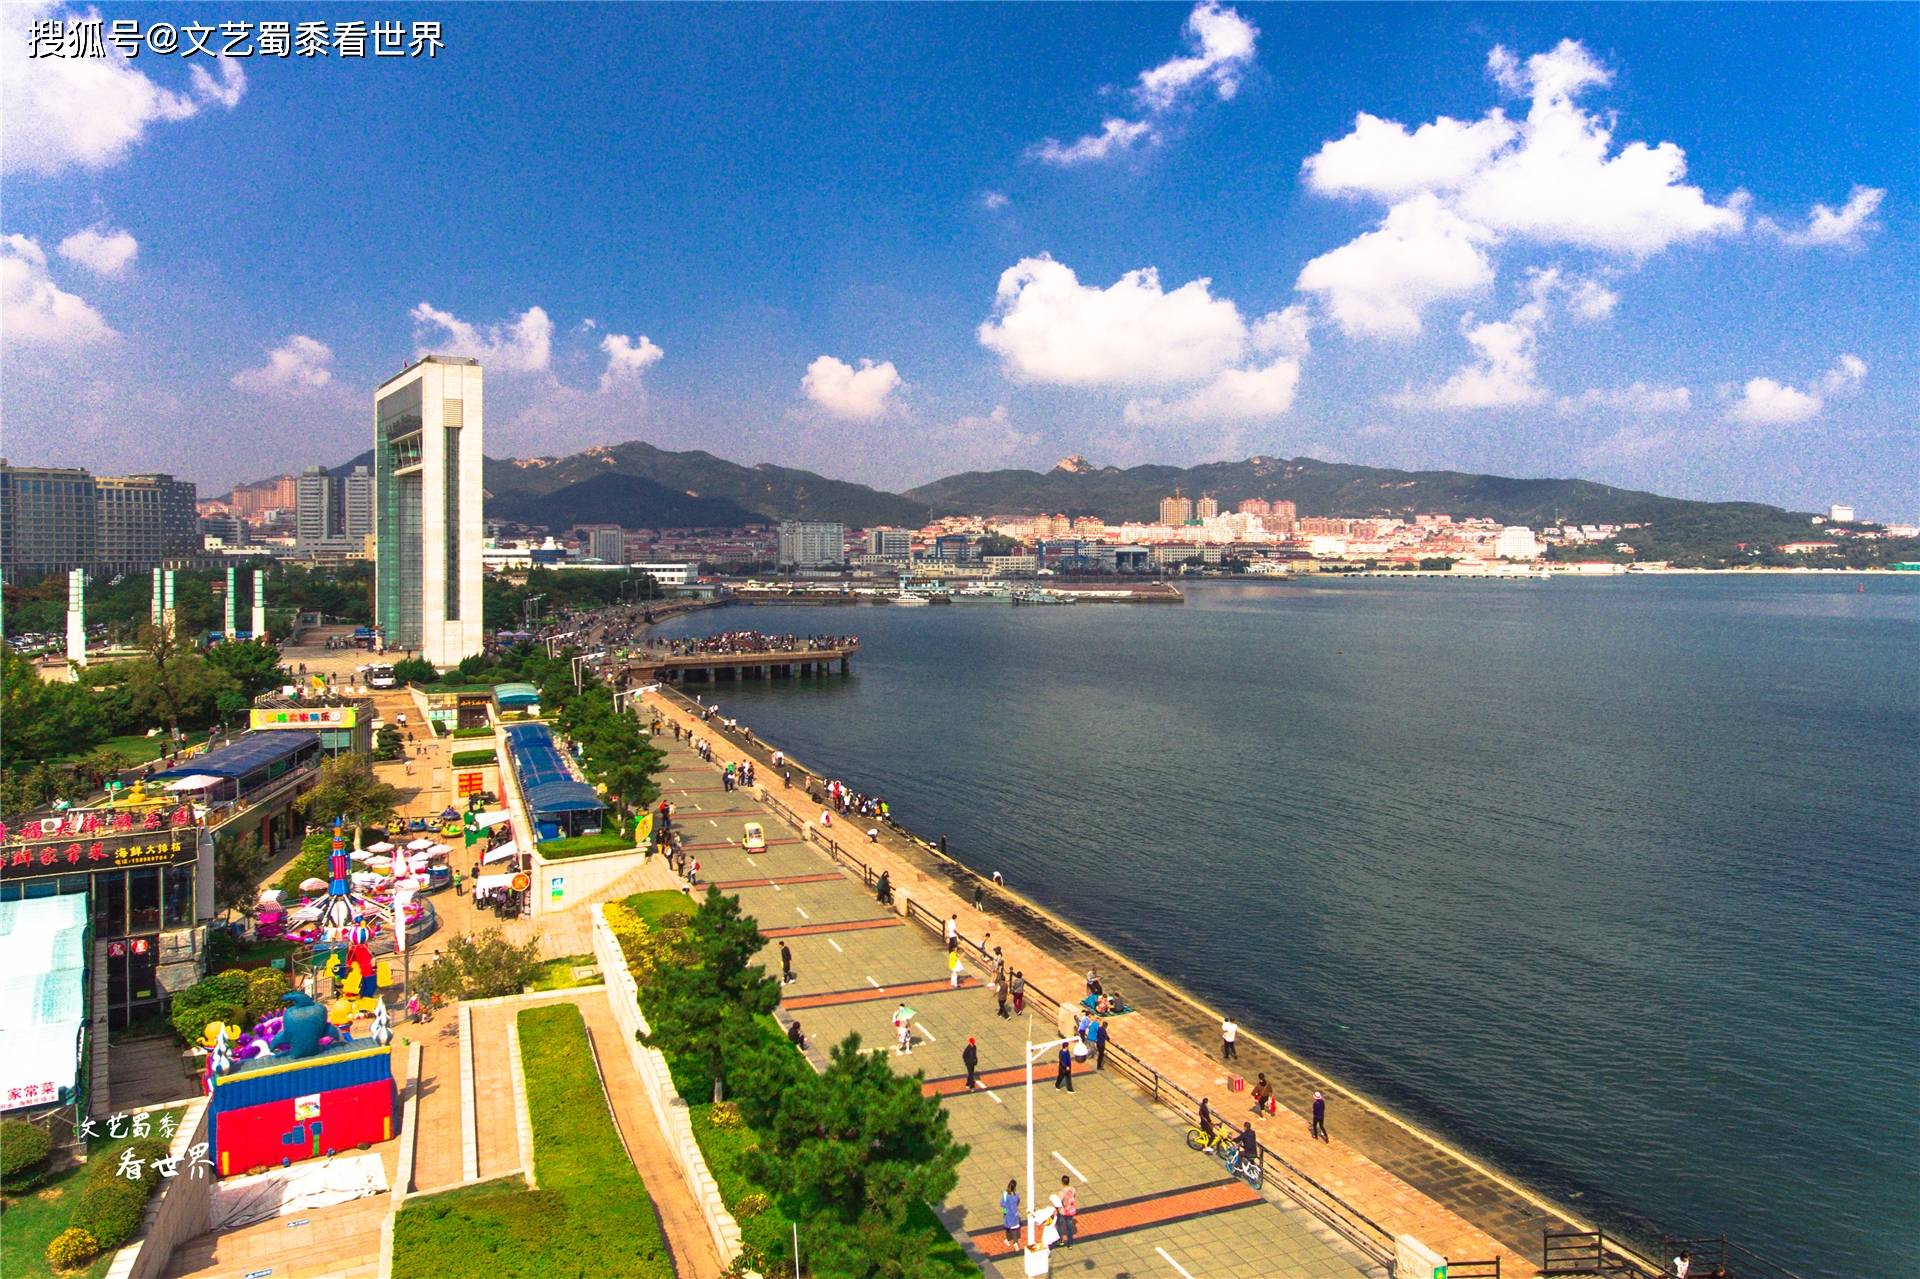 威海位于山东省东部,是临近渤海湾入口的一座沿海城市